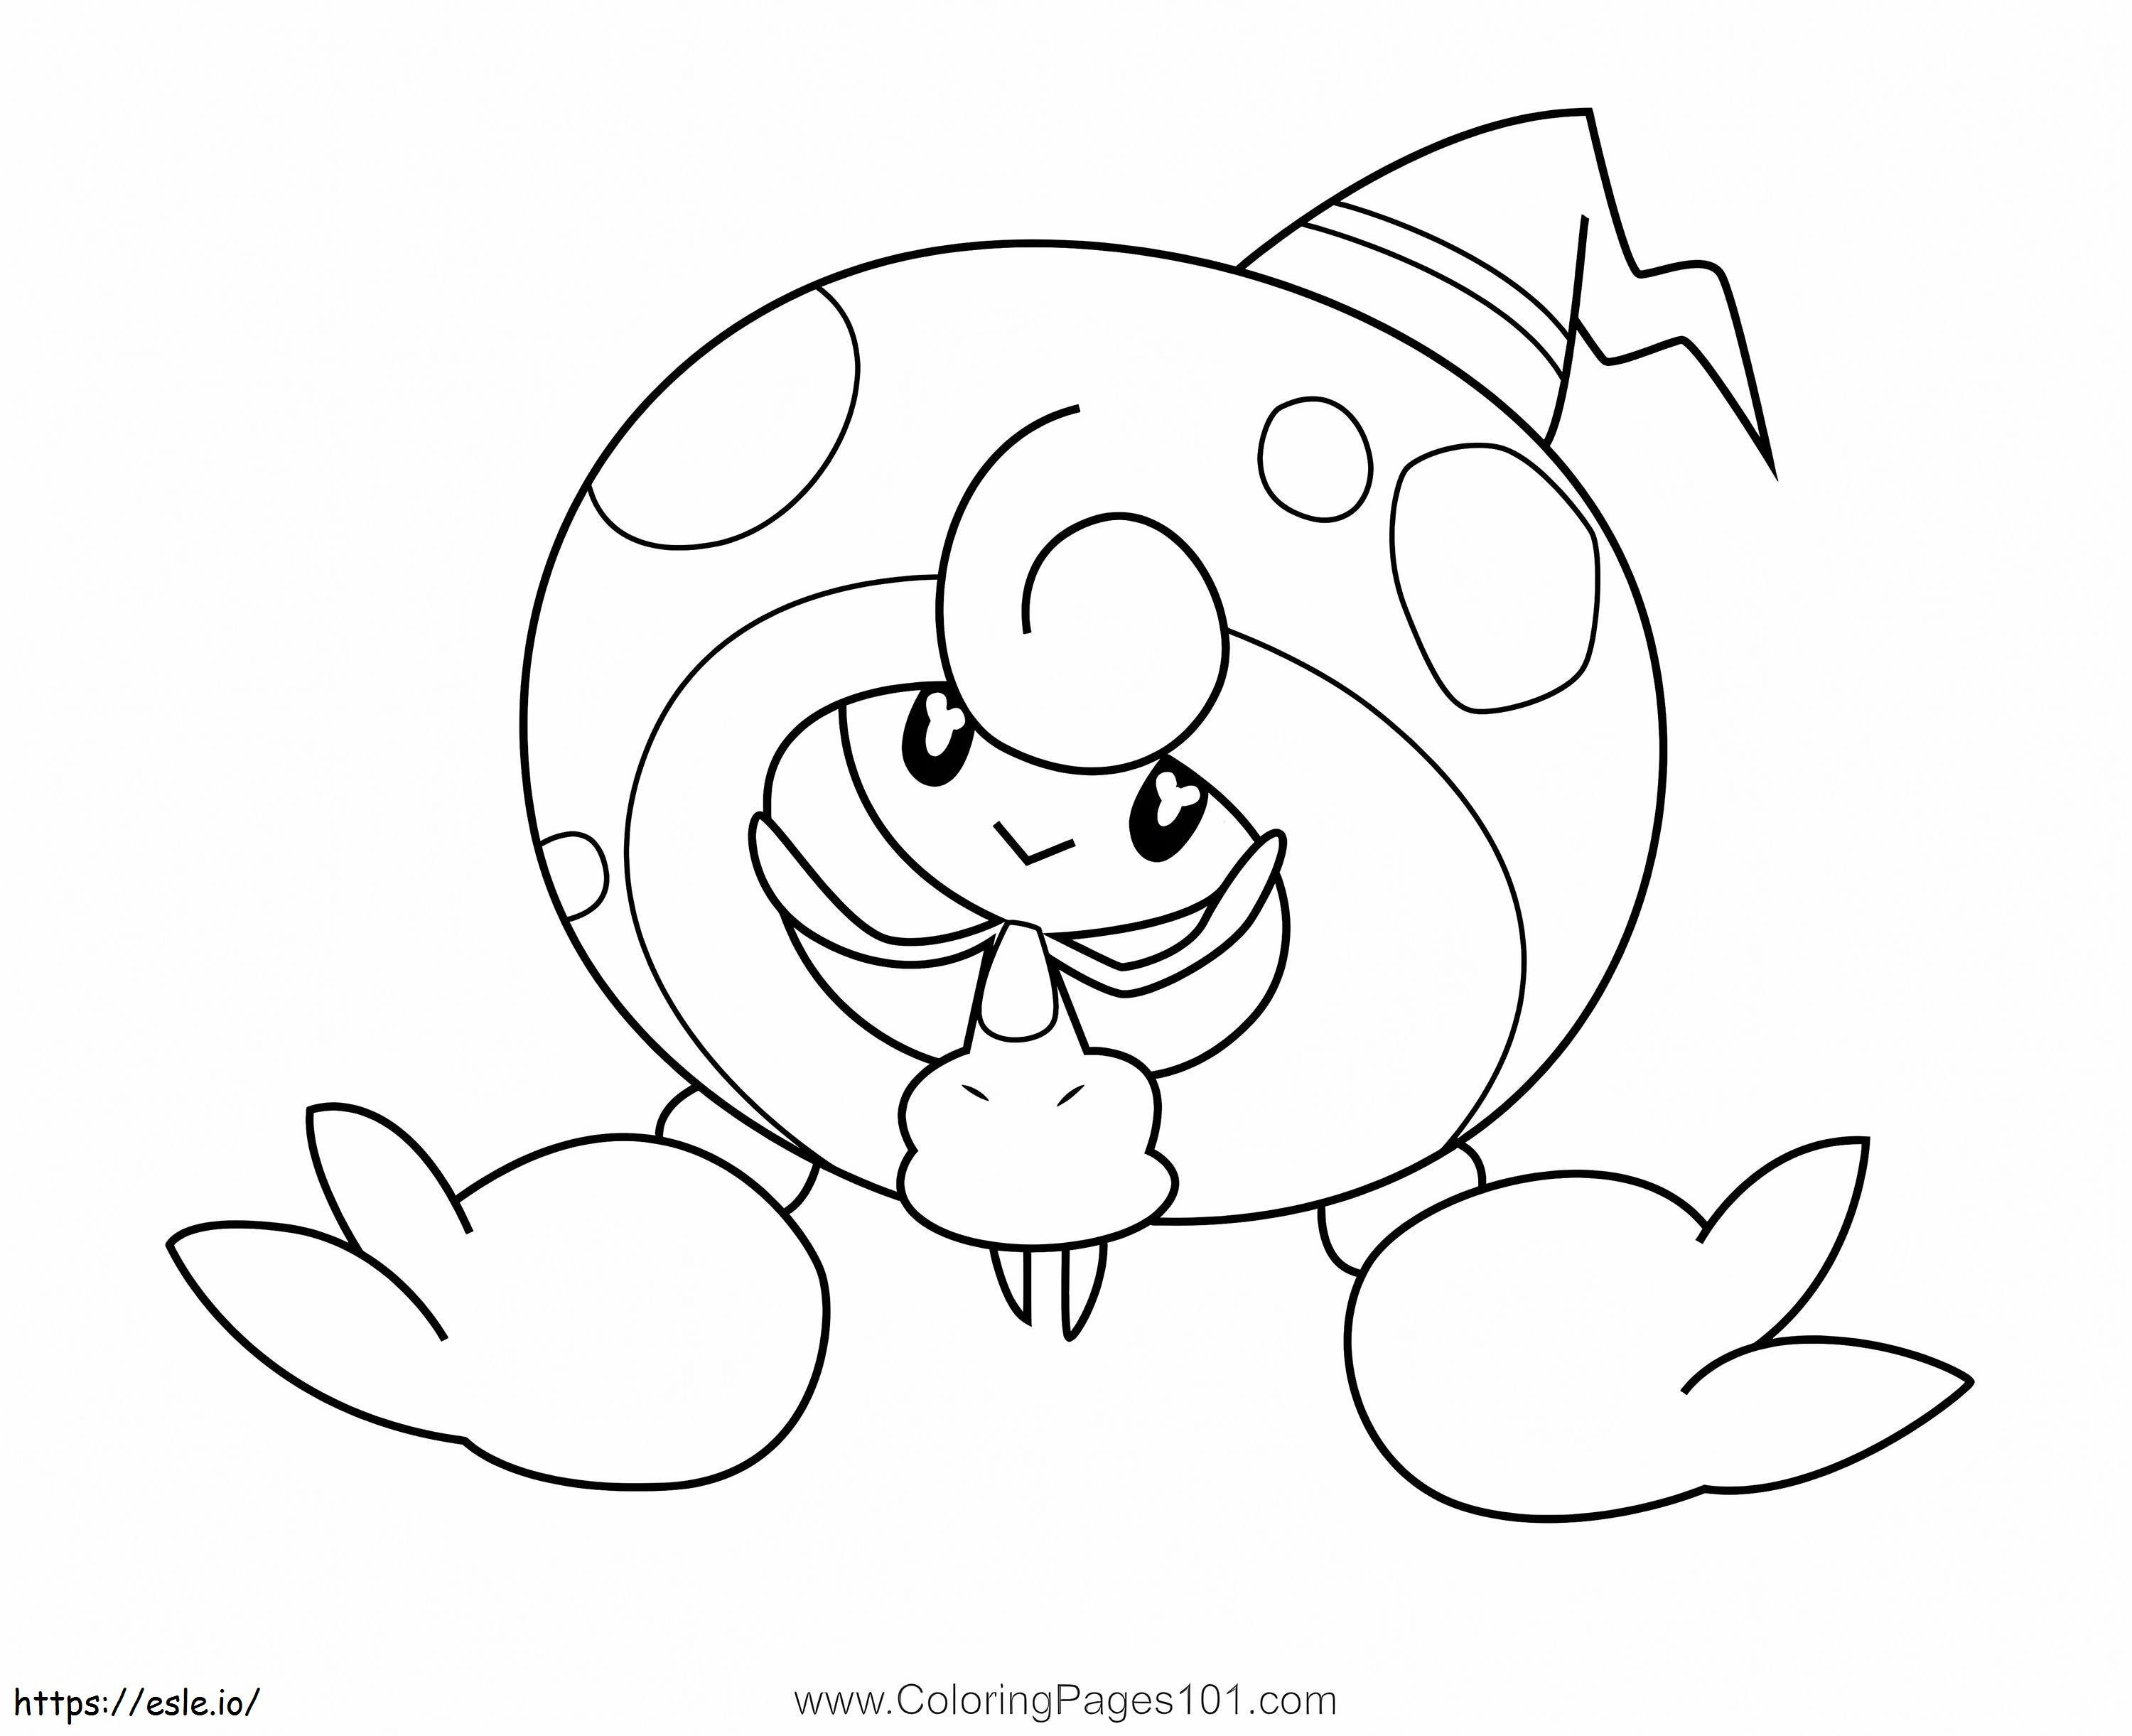 Coloriage Pokémon Hatterem à imprimer dessin